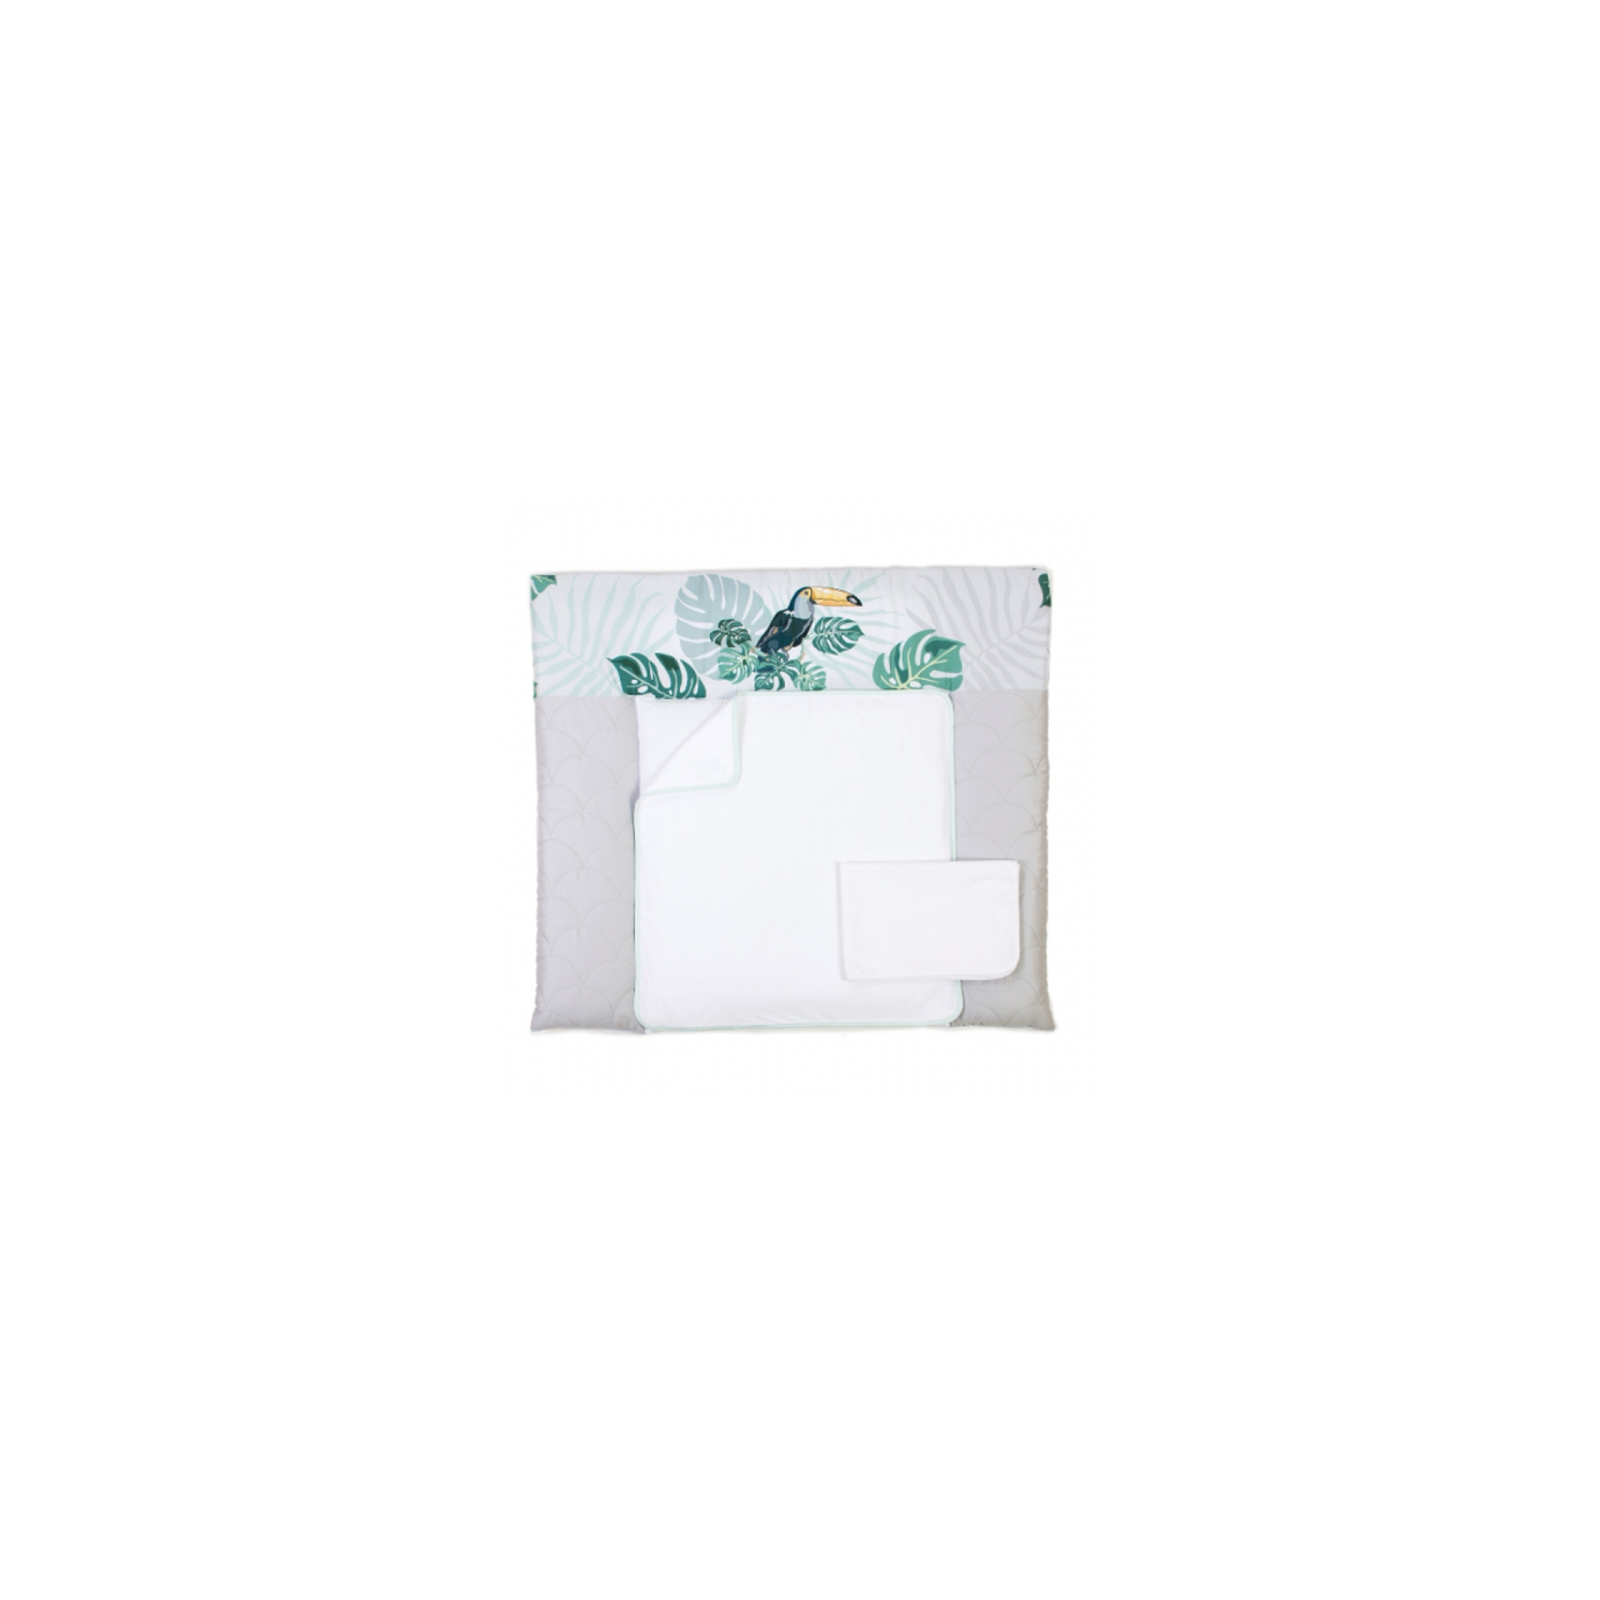 Пеленальный матрасик Верес Tropic baby (50*70) (426.7)